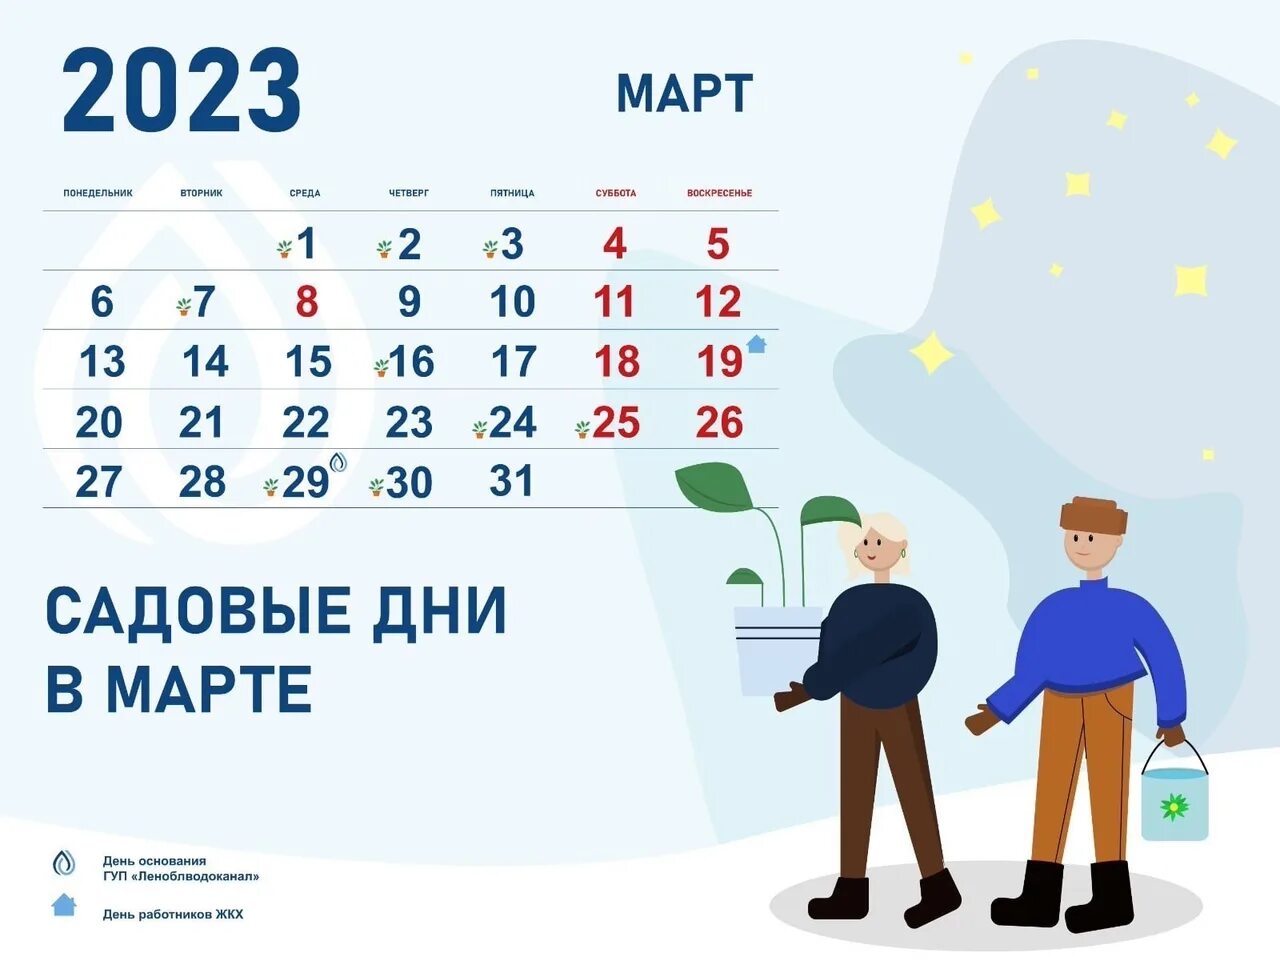 Сильные дни в марте. Календарь март 2023. Календарь на месяц. Календарь на март 2023 года.